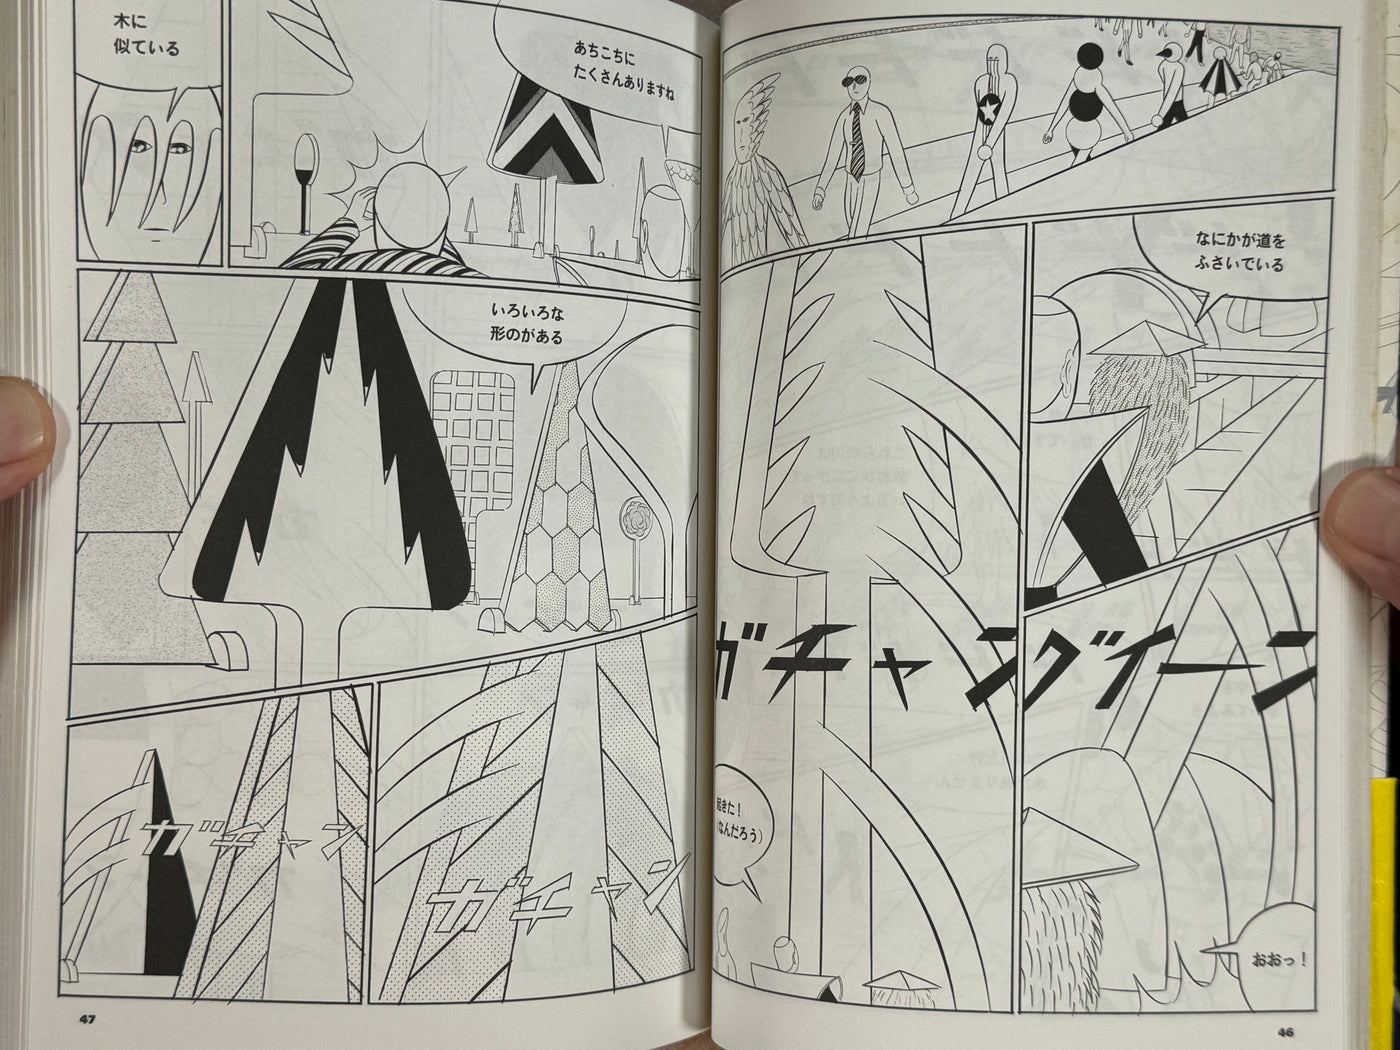 Niwa / Garden by Yuichi Yokoyama (2007) w/ Original Illustration